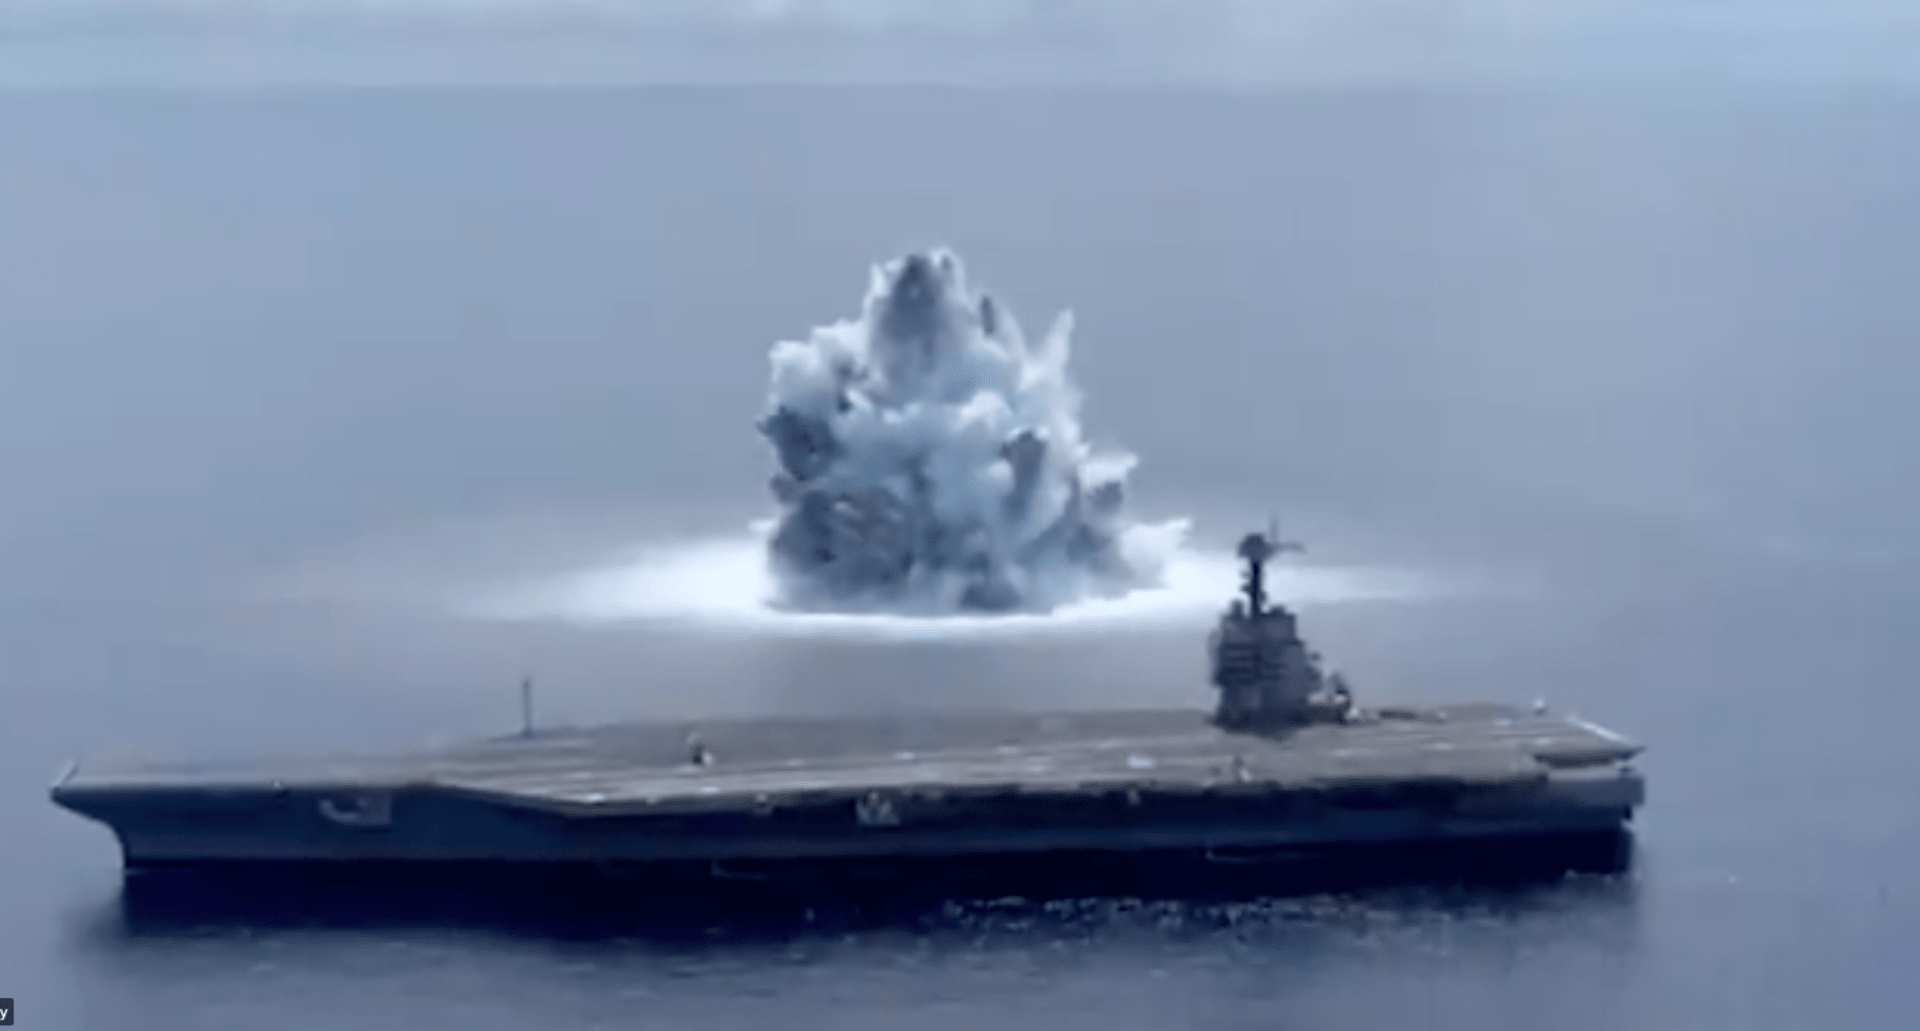 Armáda USA nechala explodovat u své letadlové lodi přes 18 tun výbušniny. 